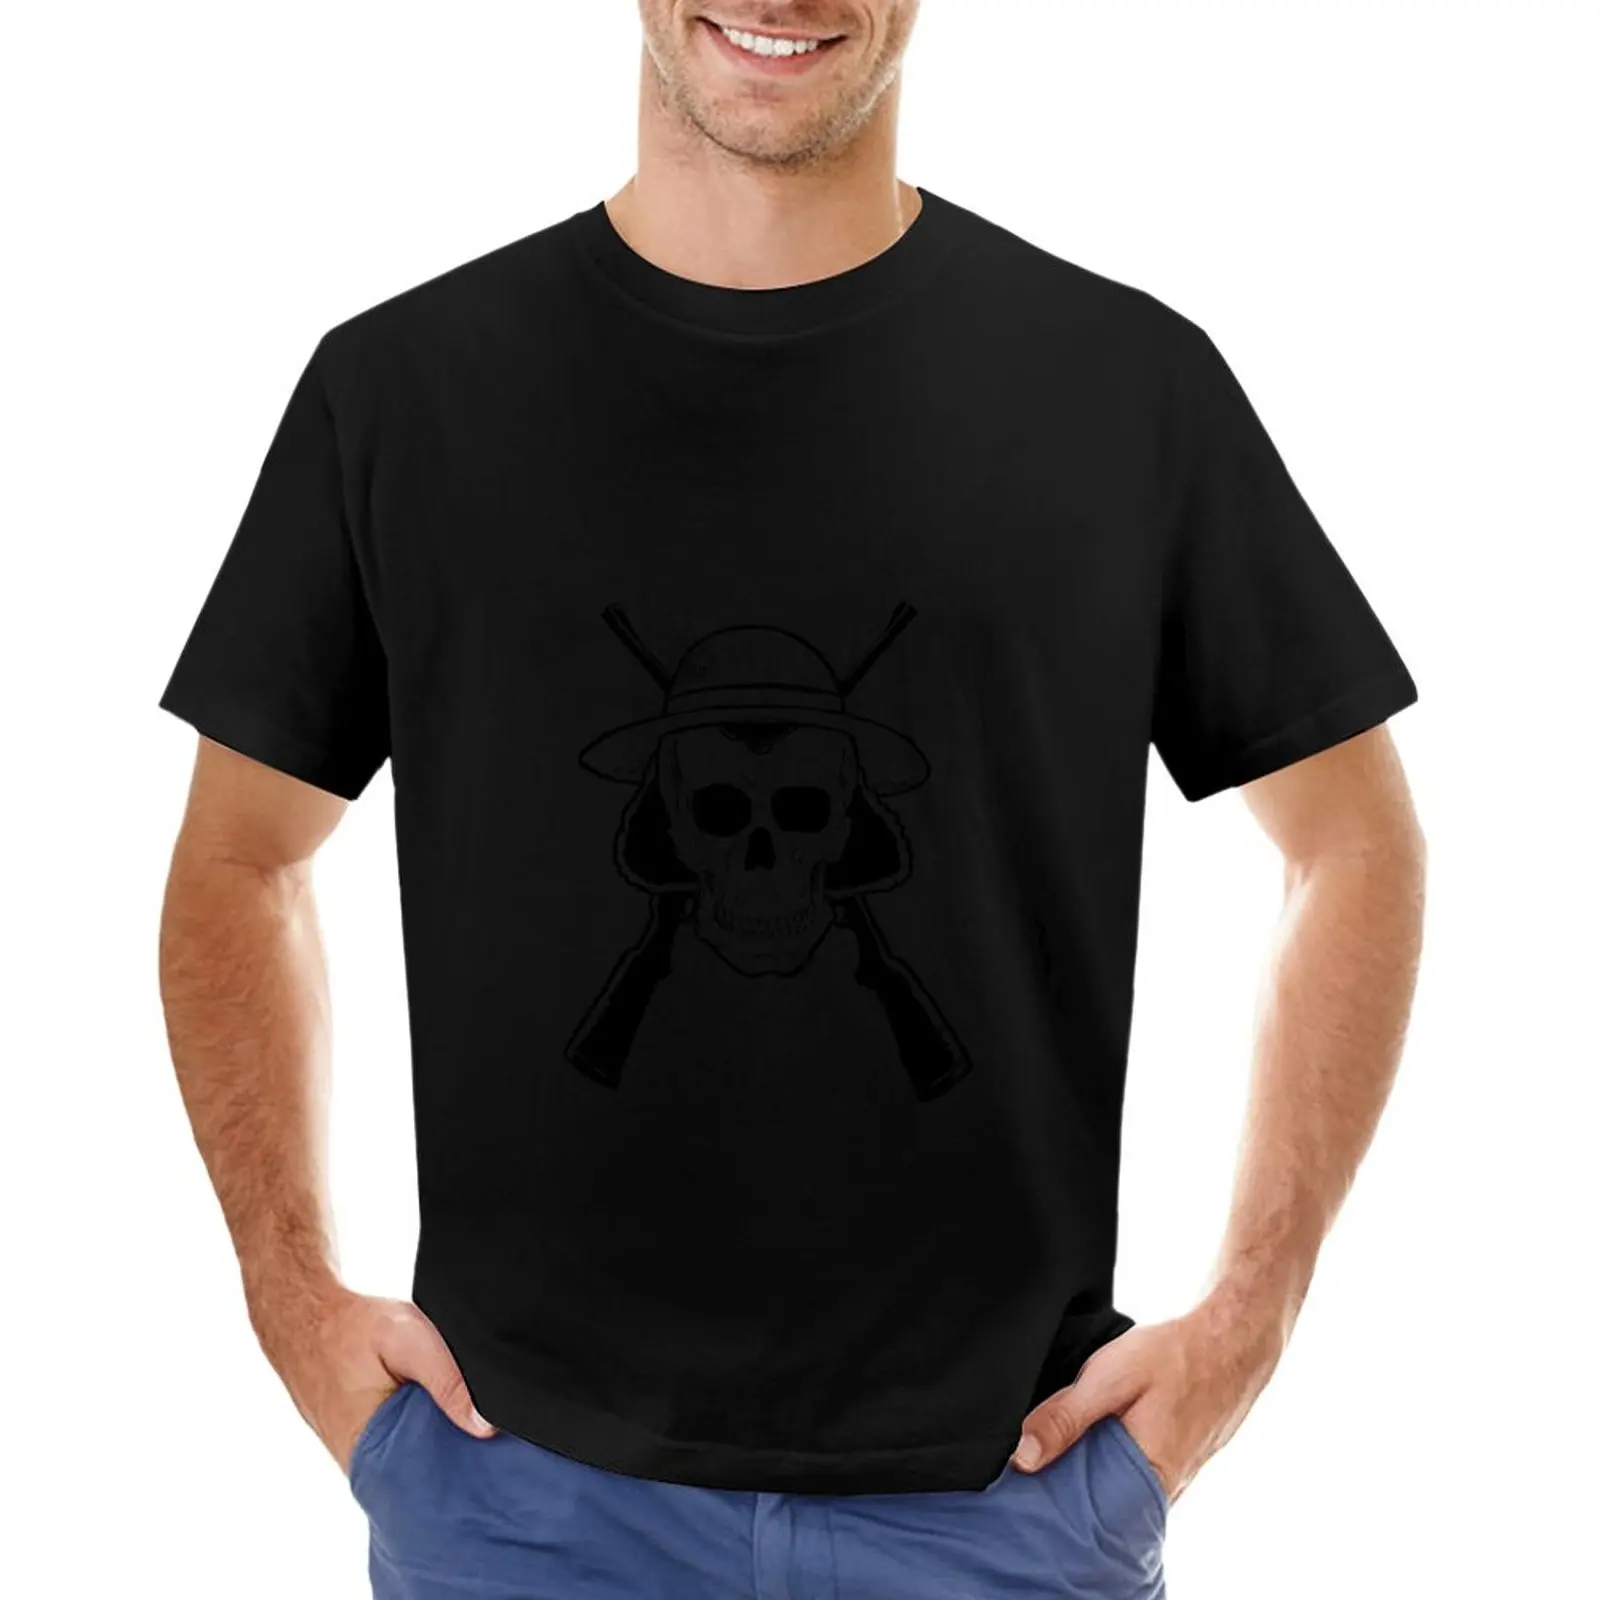 

Футболка с изображением черепа пистолета, графическая футболка, футболка для мальчика, простые мужские футболки